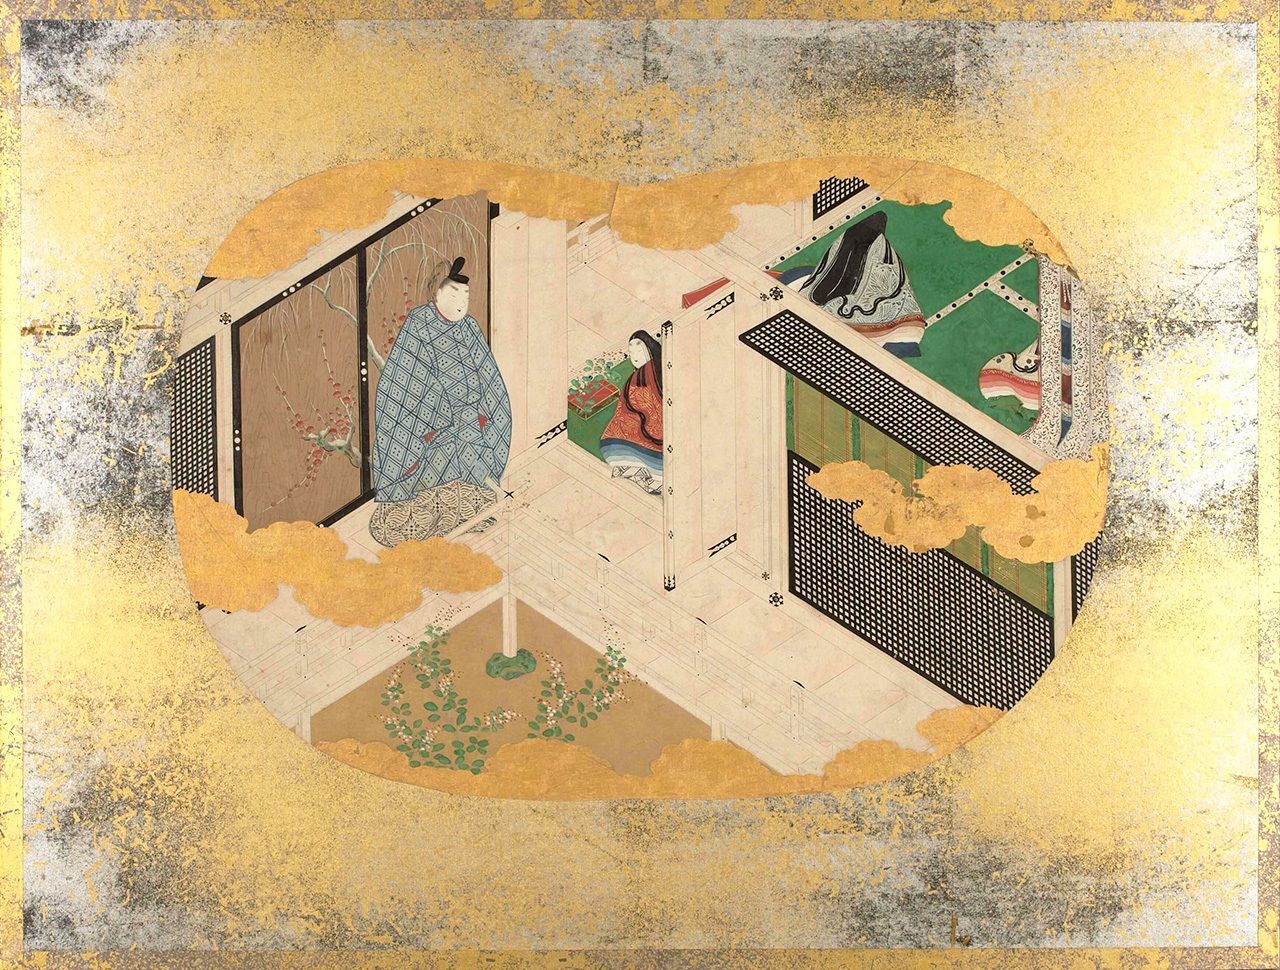 مشهد من الفصل الذي يحمل عنوان ’’كاغيرو (ذبابة مايو)‘‘ من ألبوم لصور حكاية غينجي مرسومة على شكل مروحة يدوية (الصورة بإذن من المعهد القومي للأدب الياباني)